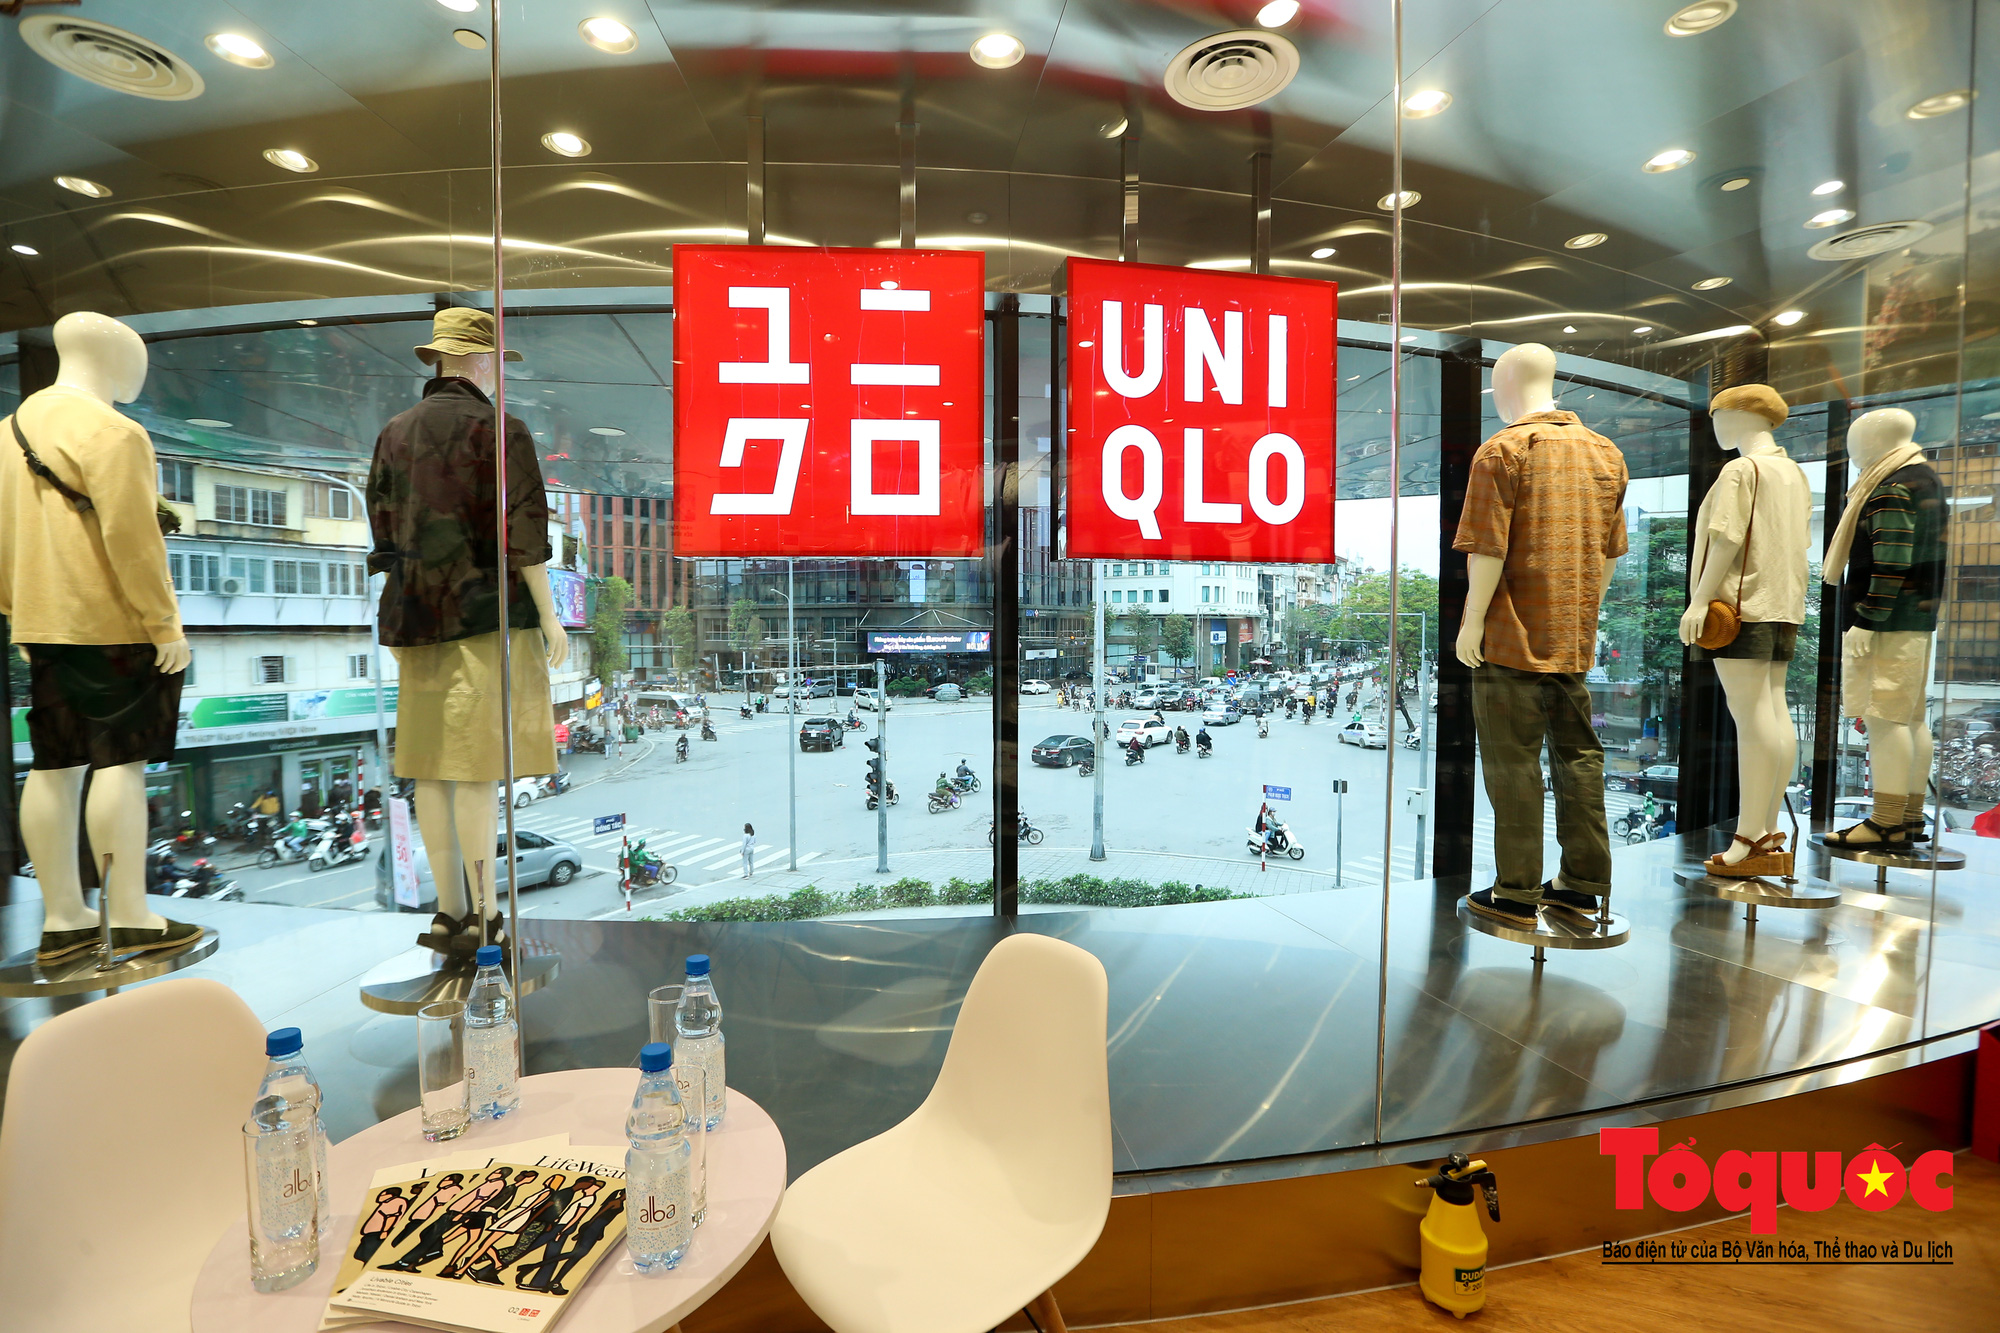 Địa chỉ hệ thống cửa hàng Uniqlo chính hãng tại Hà Nội  Kênh Z